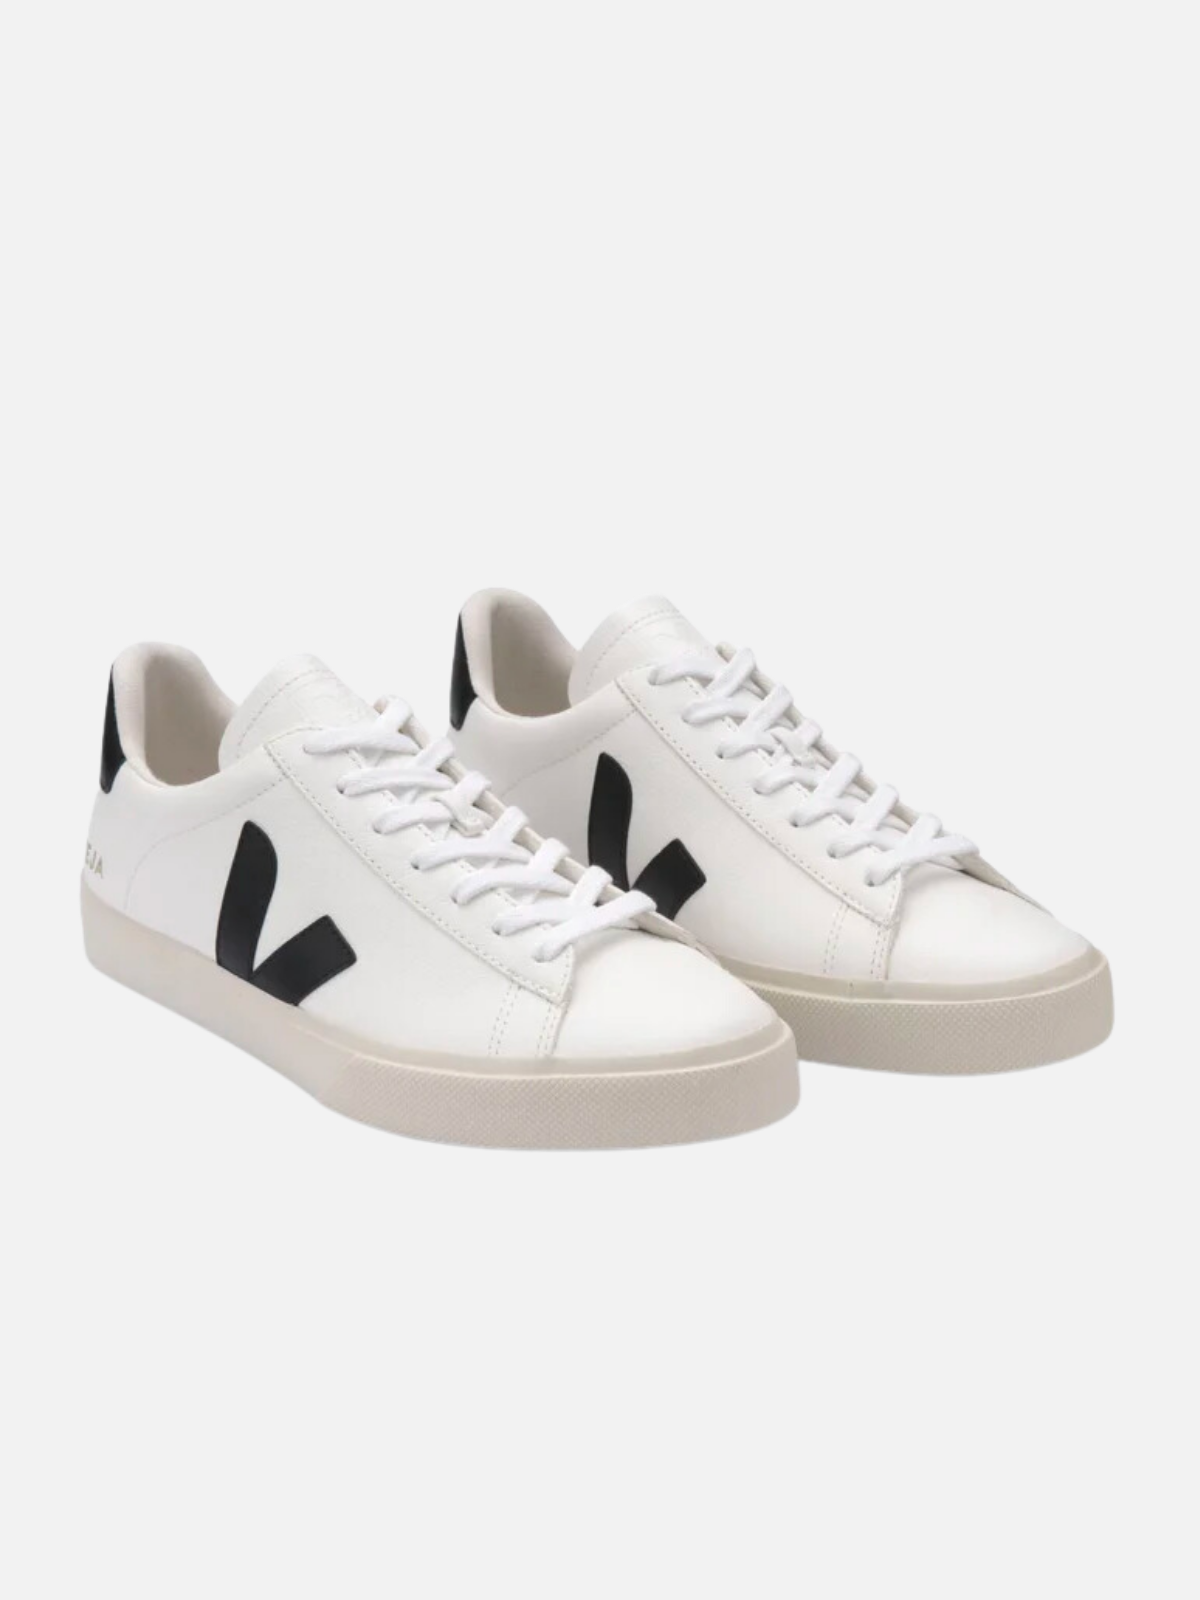 VEJA Sneaker Campo Leather Extra White Black Kempt Athens Georgia Mens Womens UGA White Leather Shoe